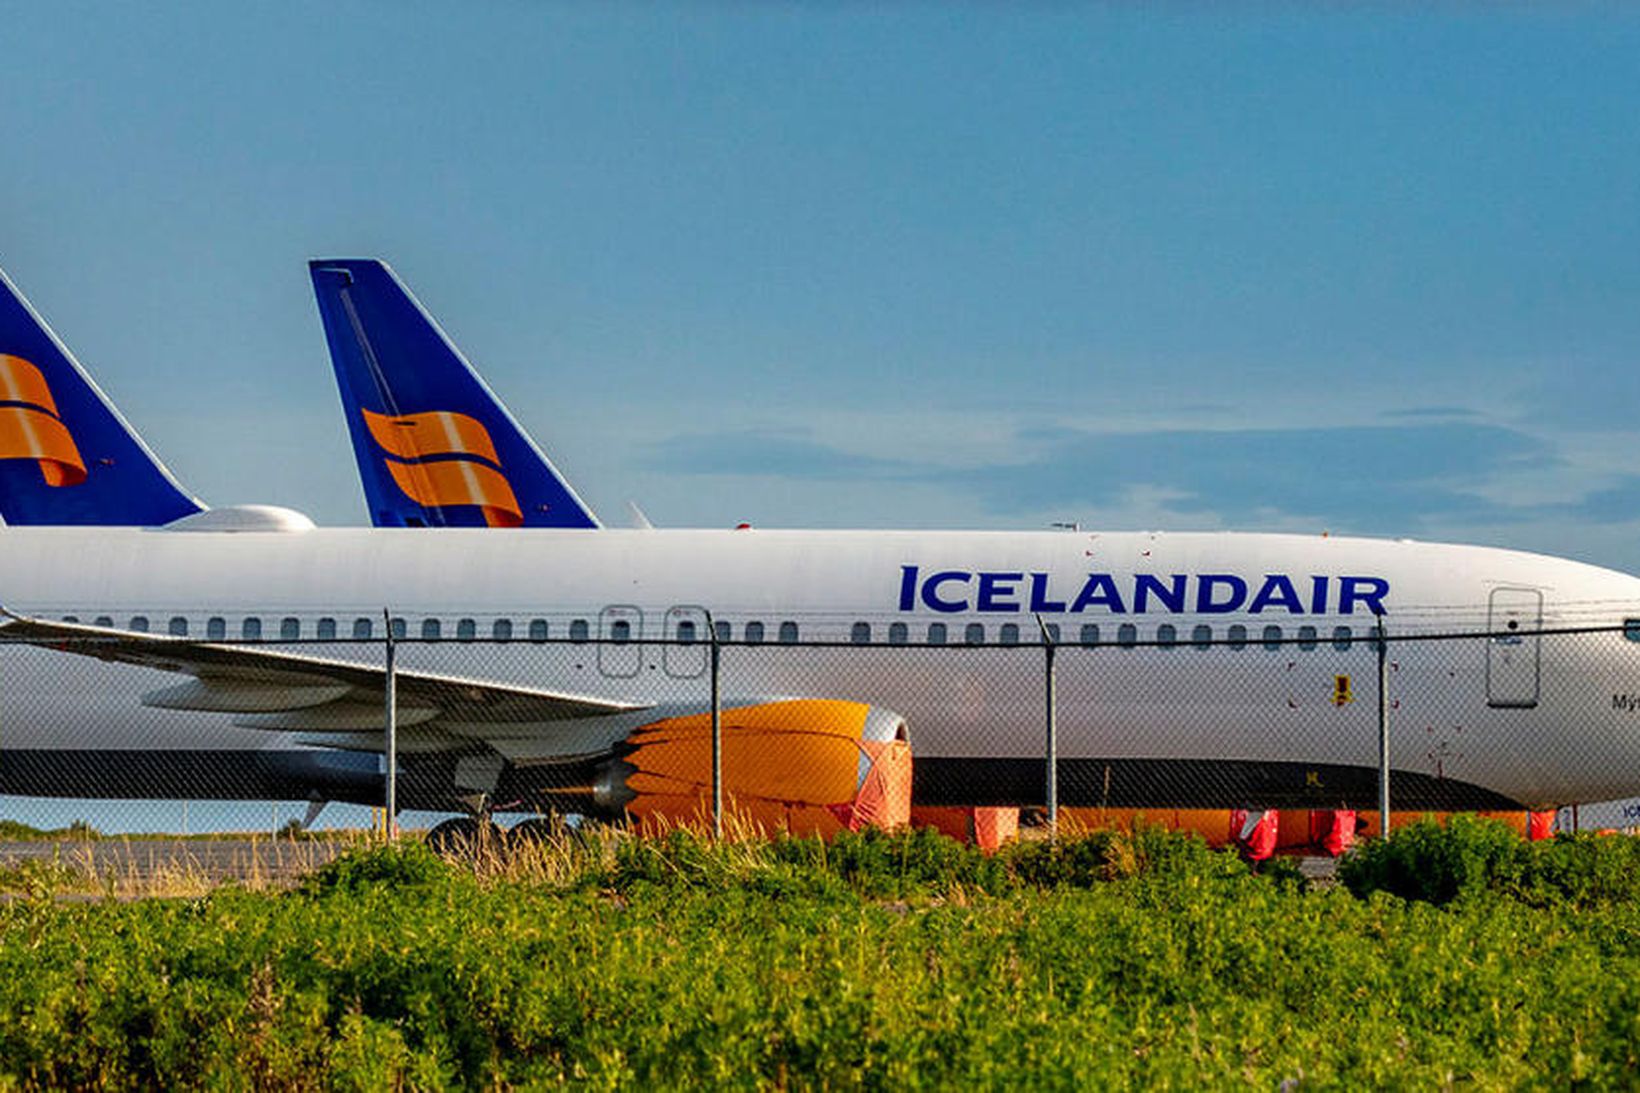 Floti Icelandair stendur að mestu óhreyfður þessa dagana.